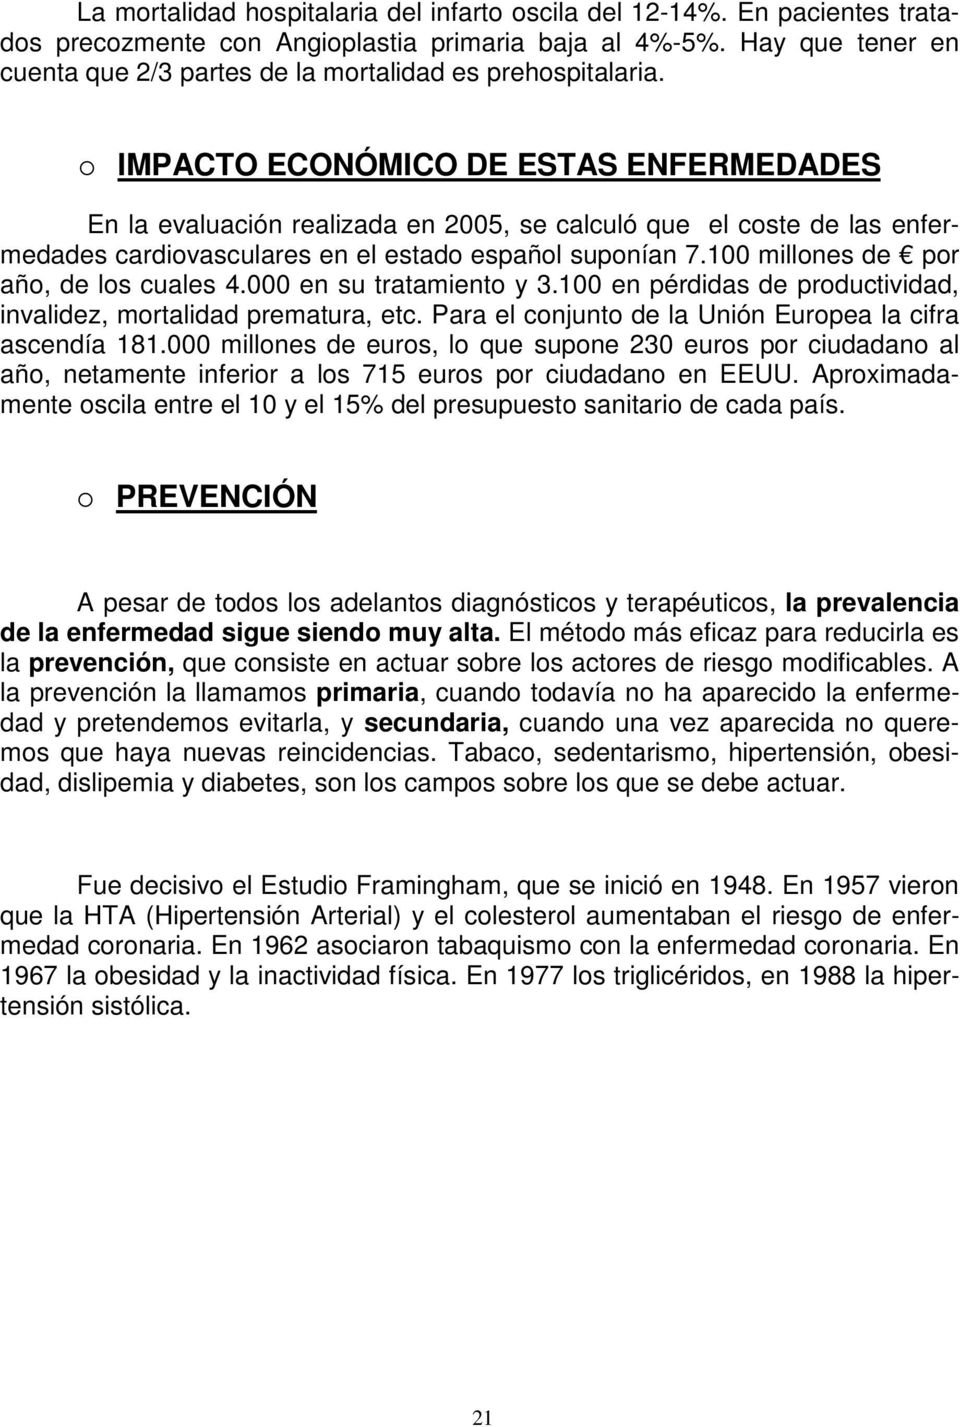 IMPACTO ECONÓMICO DE ESTAS ENFERMEDADES En la evaluación realizada en 2005, se calculó que el coste de las enfermedades cardiovasculares en el estado español suponían 7.